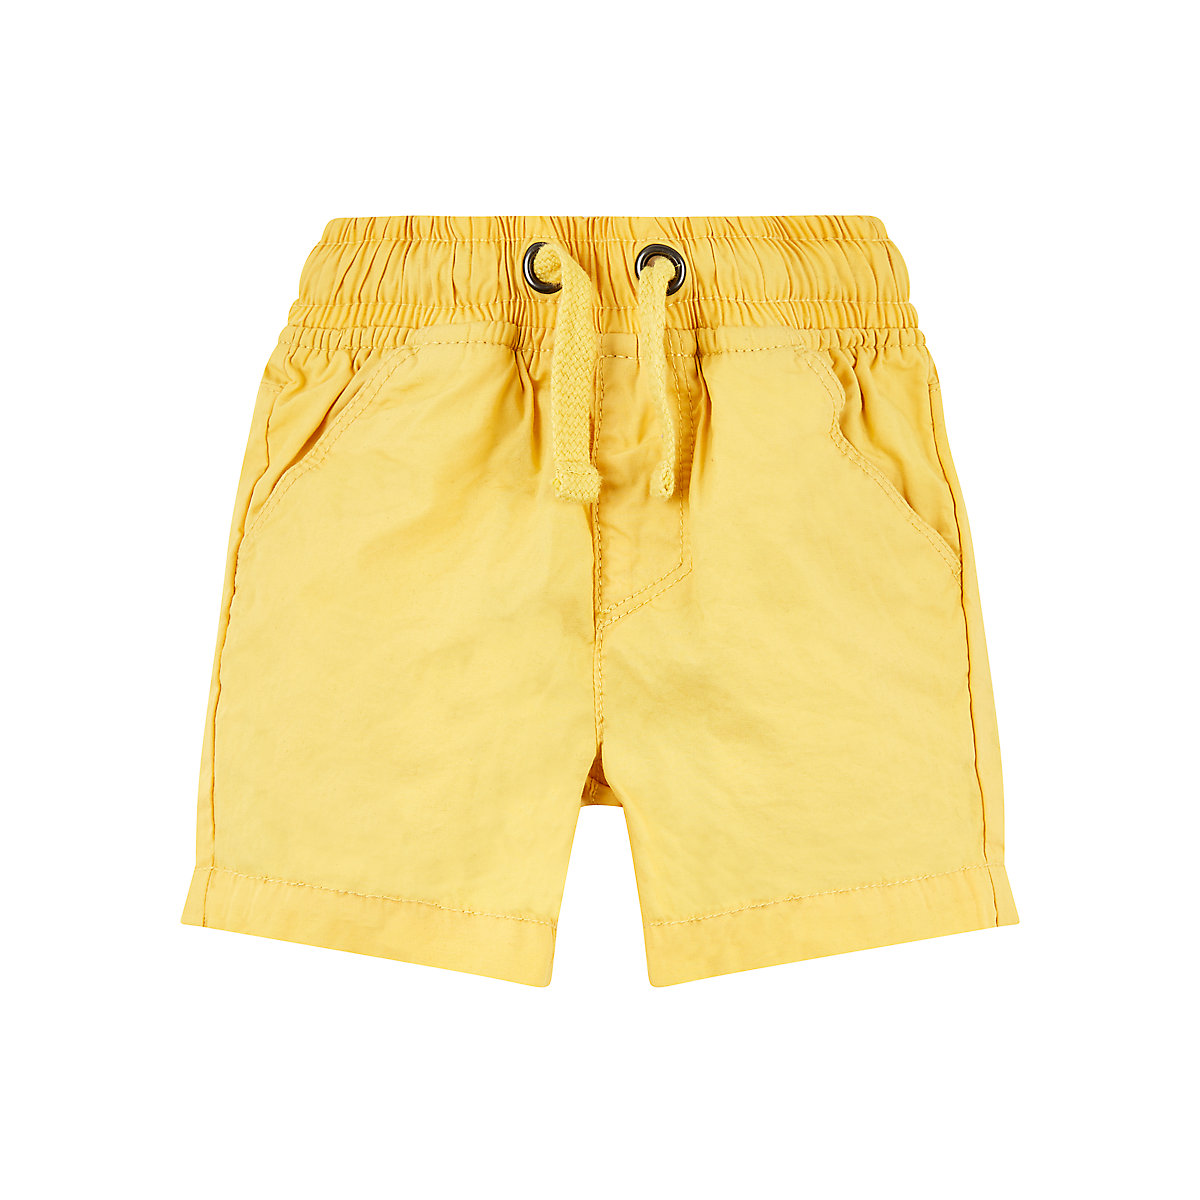 yellow shorts Reviews